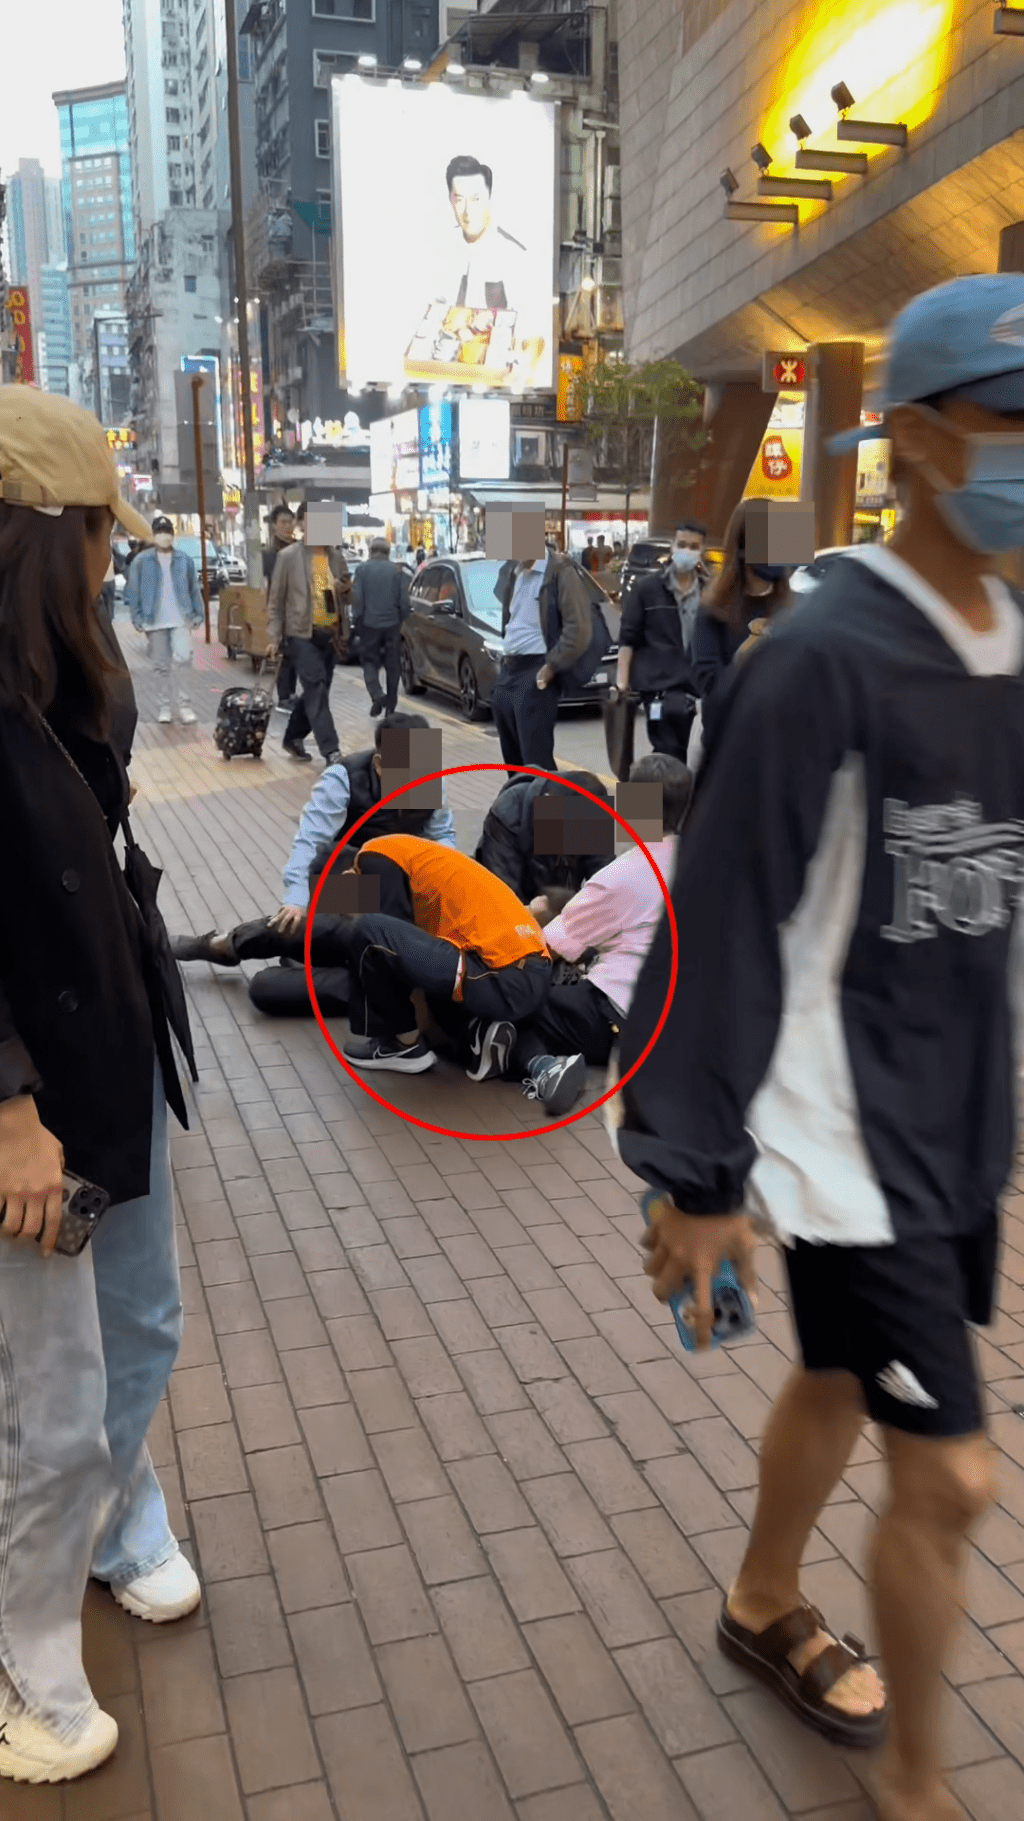 影片開頭見到一名穿著花衫男子，被撳在地上。